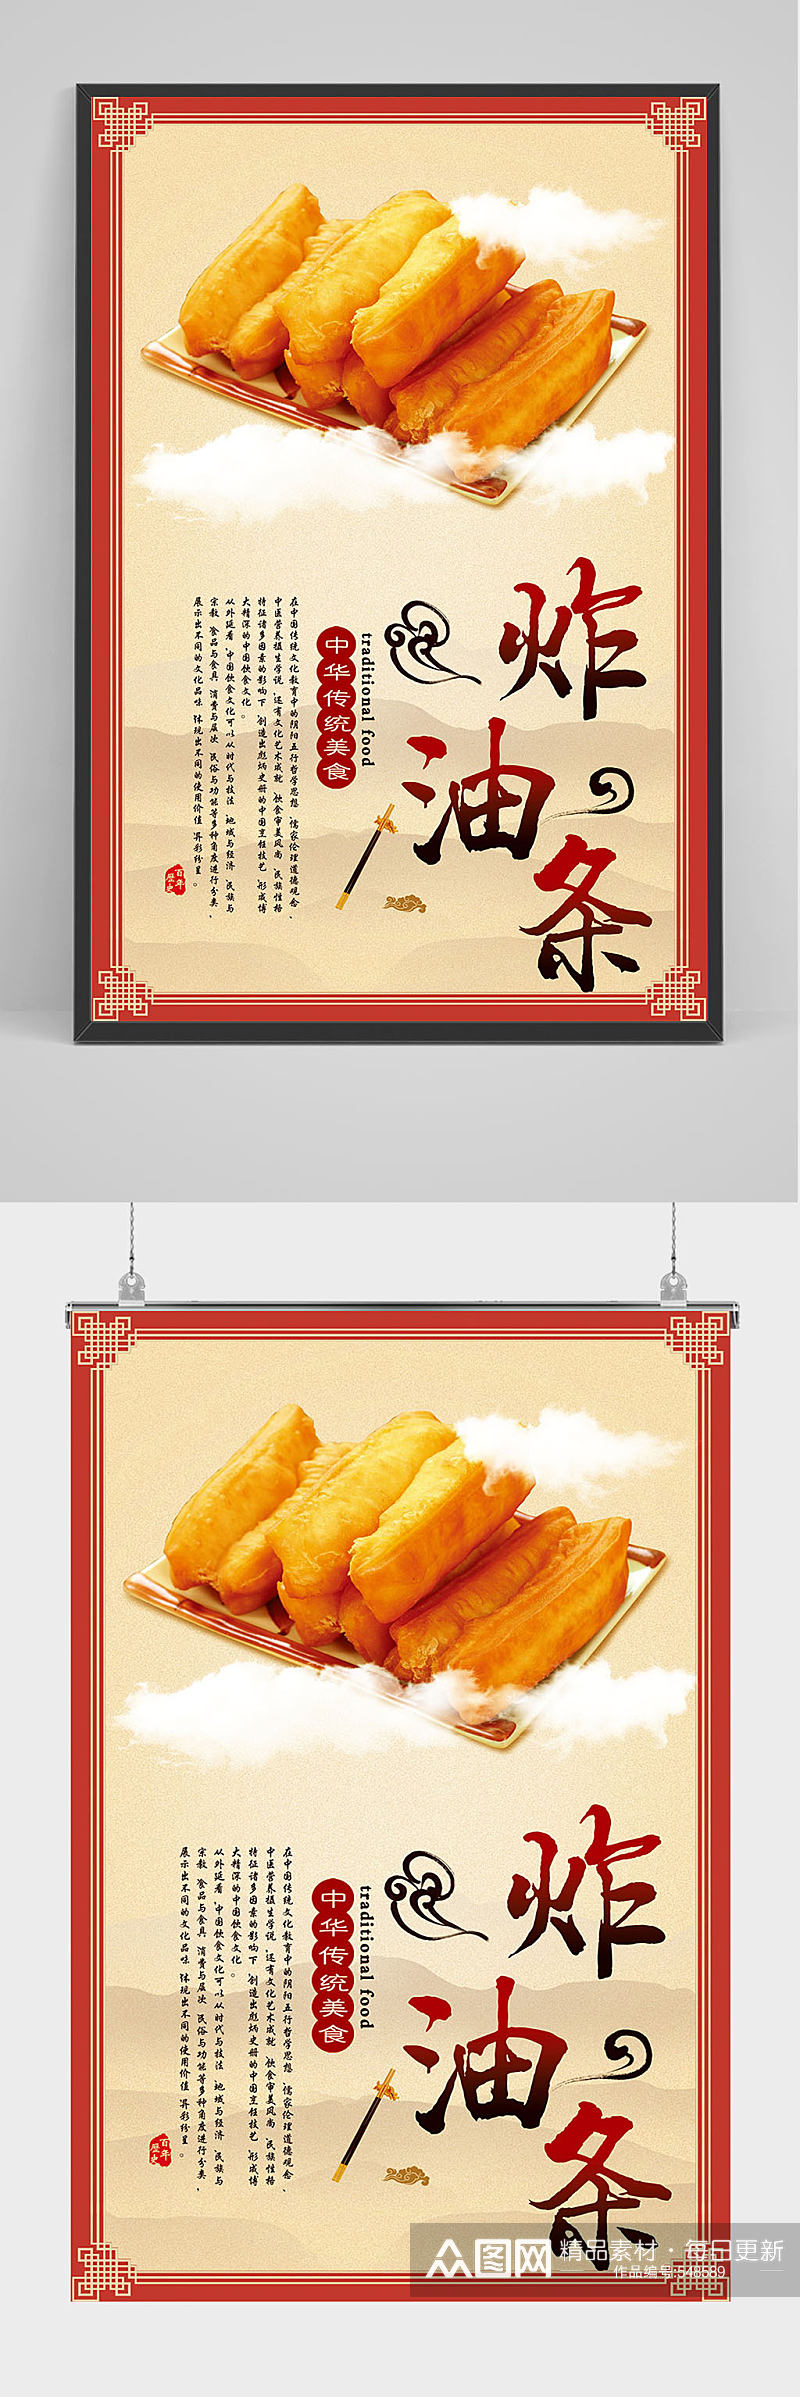 精品中国风炸油条海报设计素材